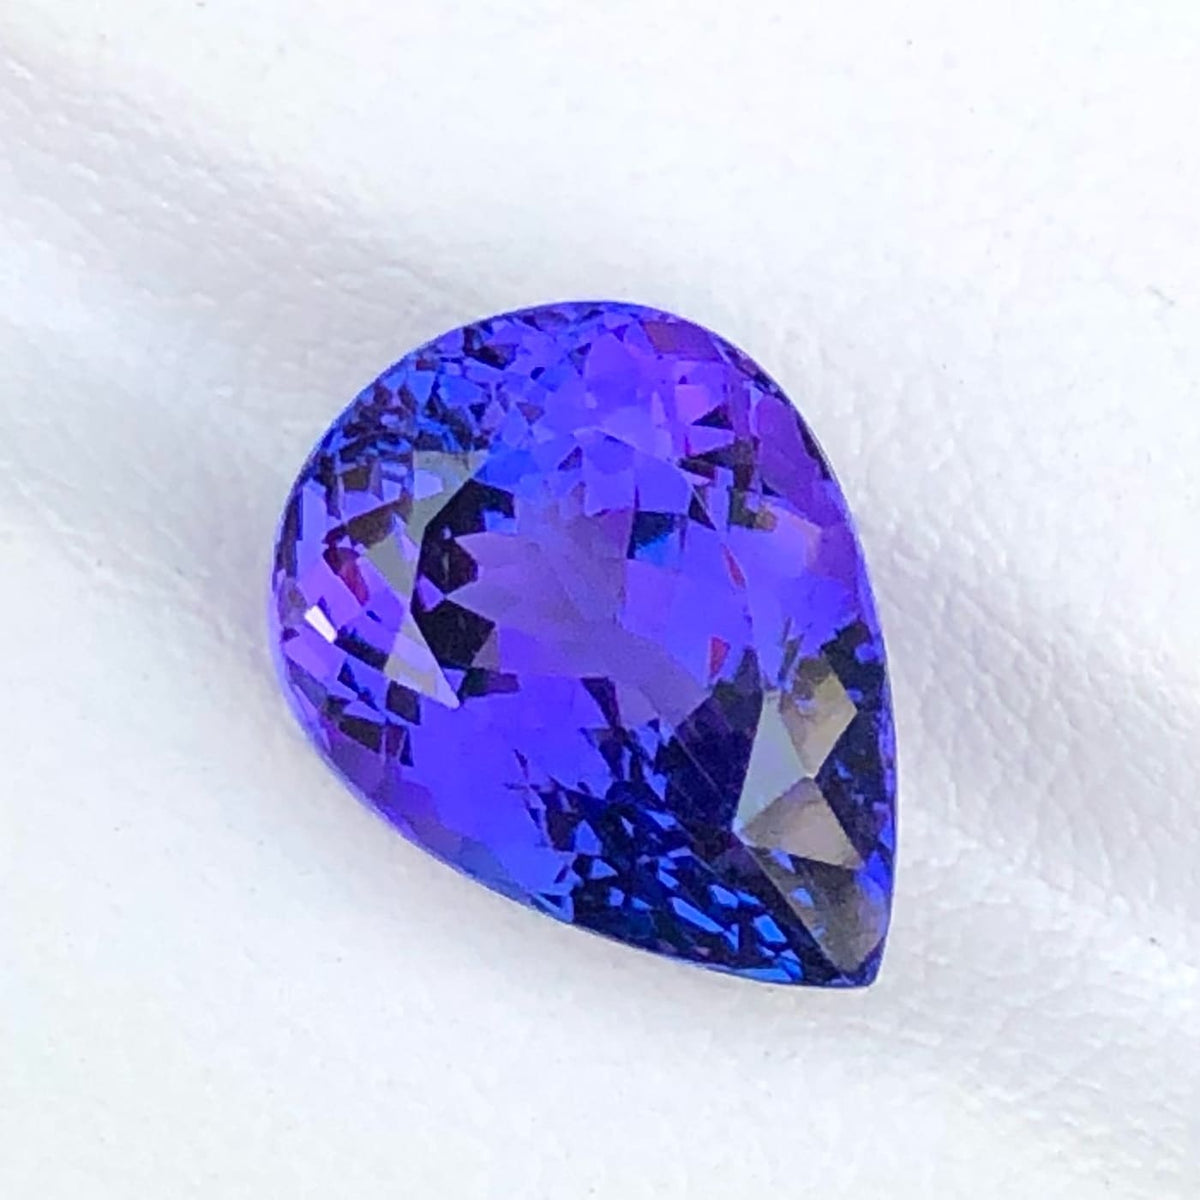 Royal Blue Tanzanite - 6.53 carats